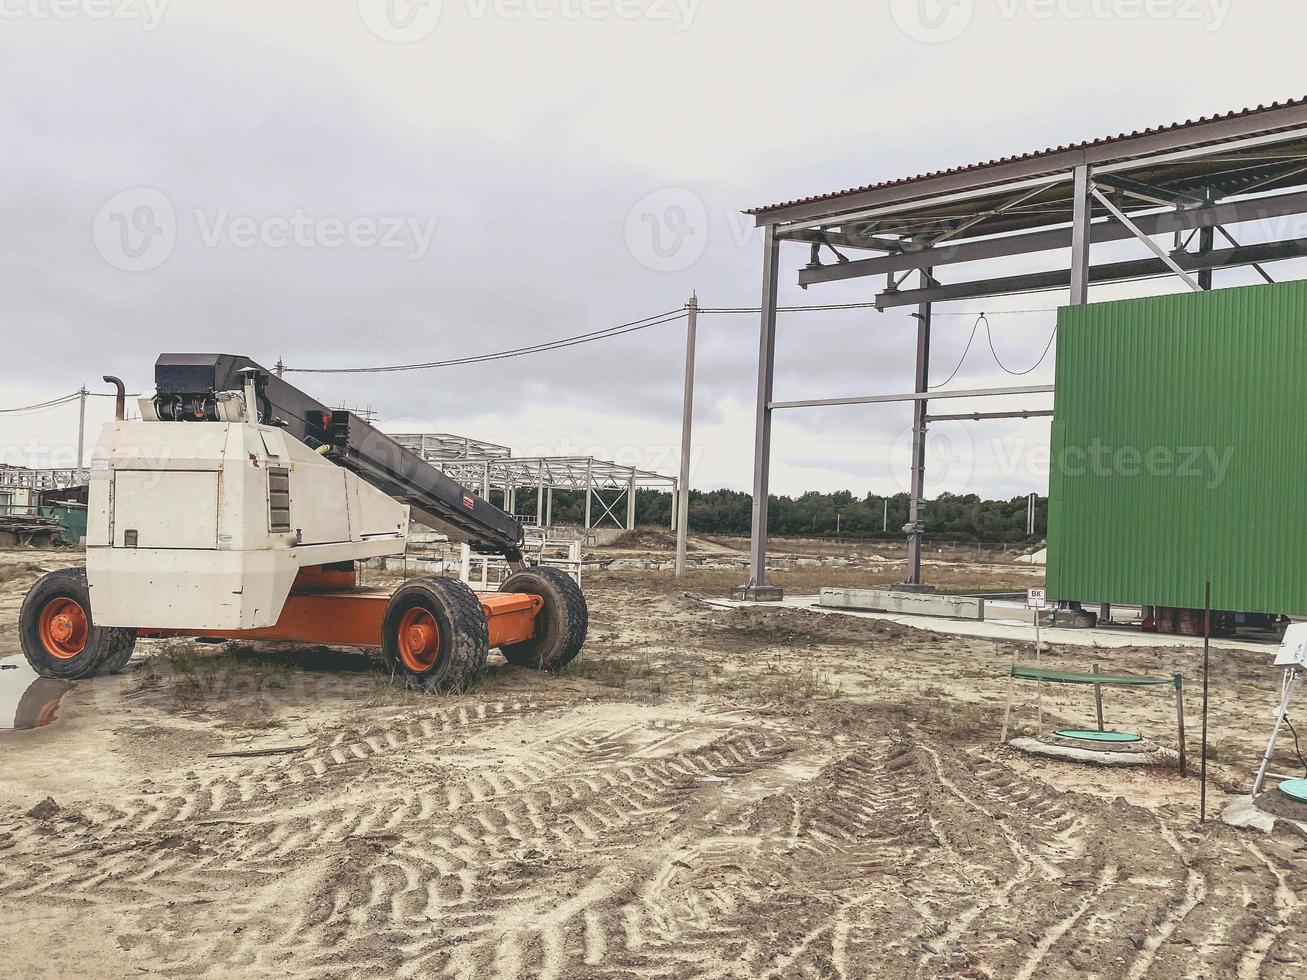 konstruktion webbplats av ett industriell komplex. maskin för transport tung byggnad material i orange. smuts på de jord, spår av tung maskineri foto